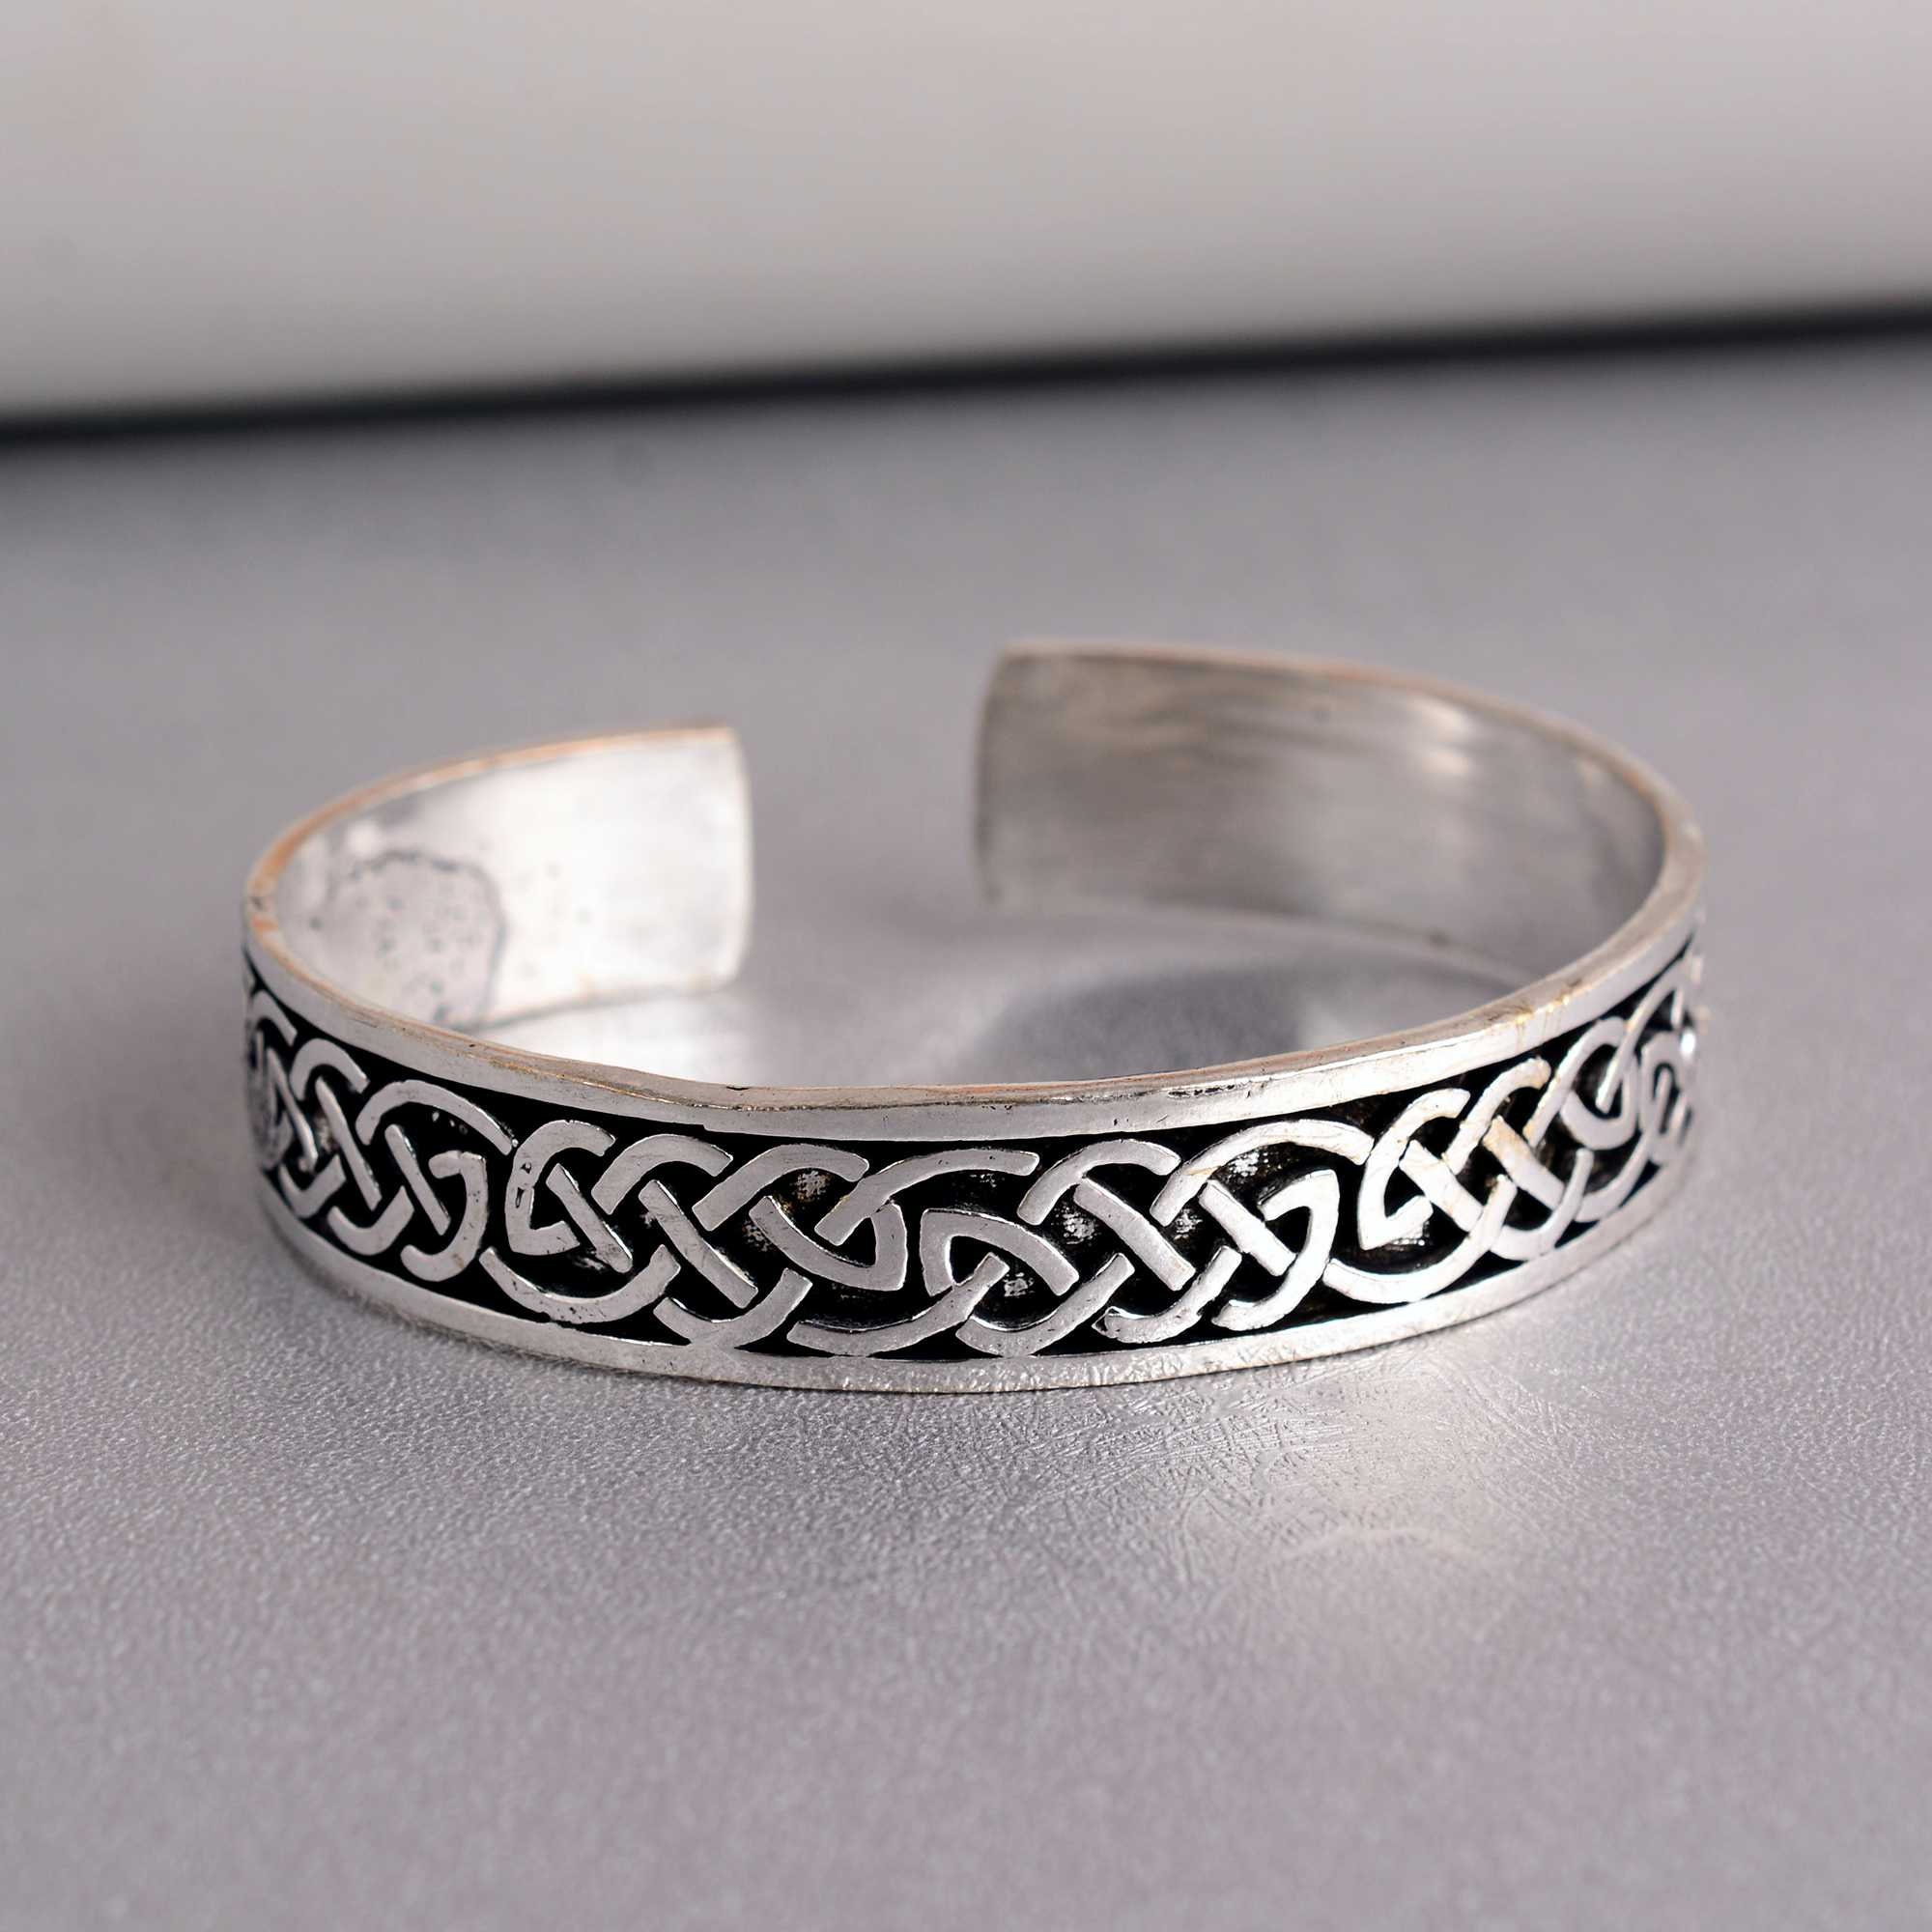 Stylish Men's Silver Bracelet - Unique Gift for Him